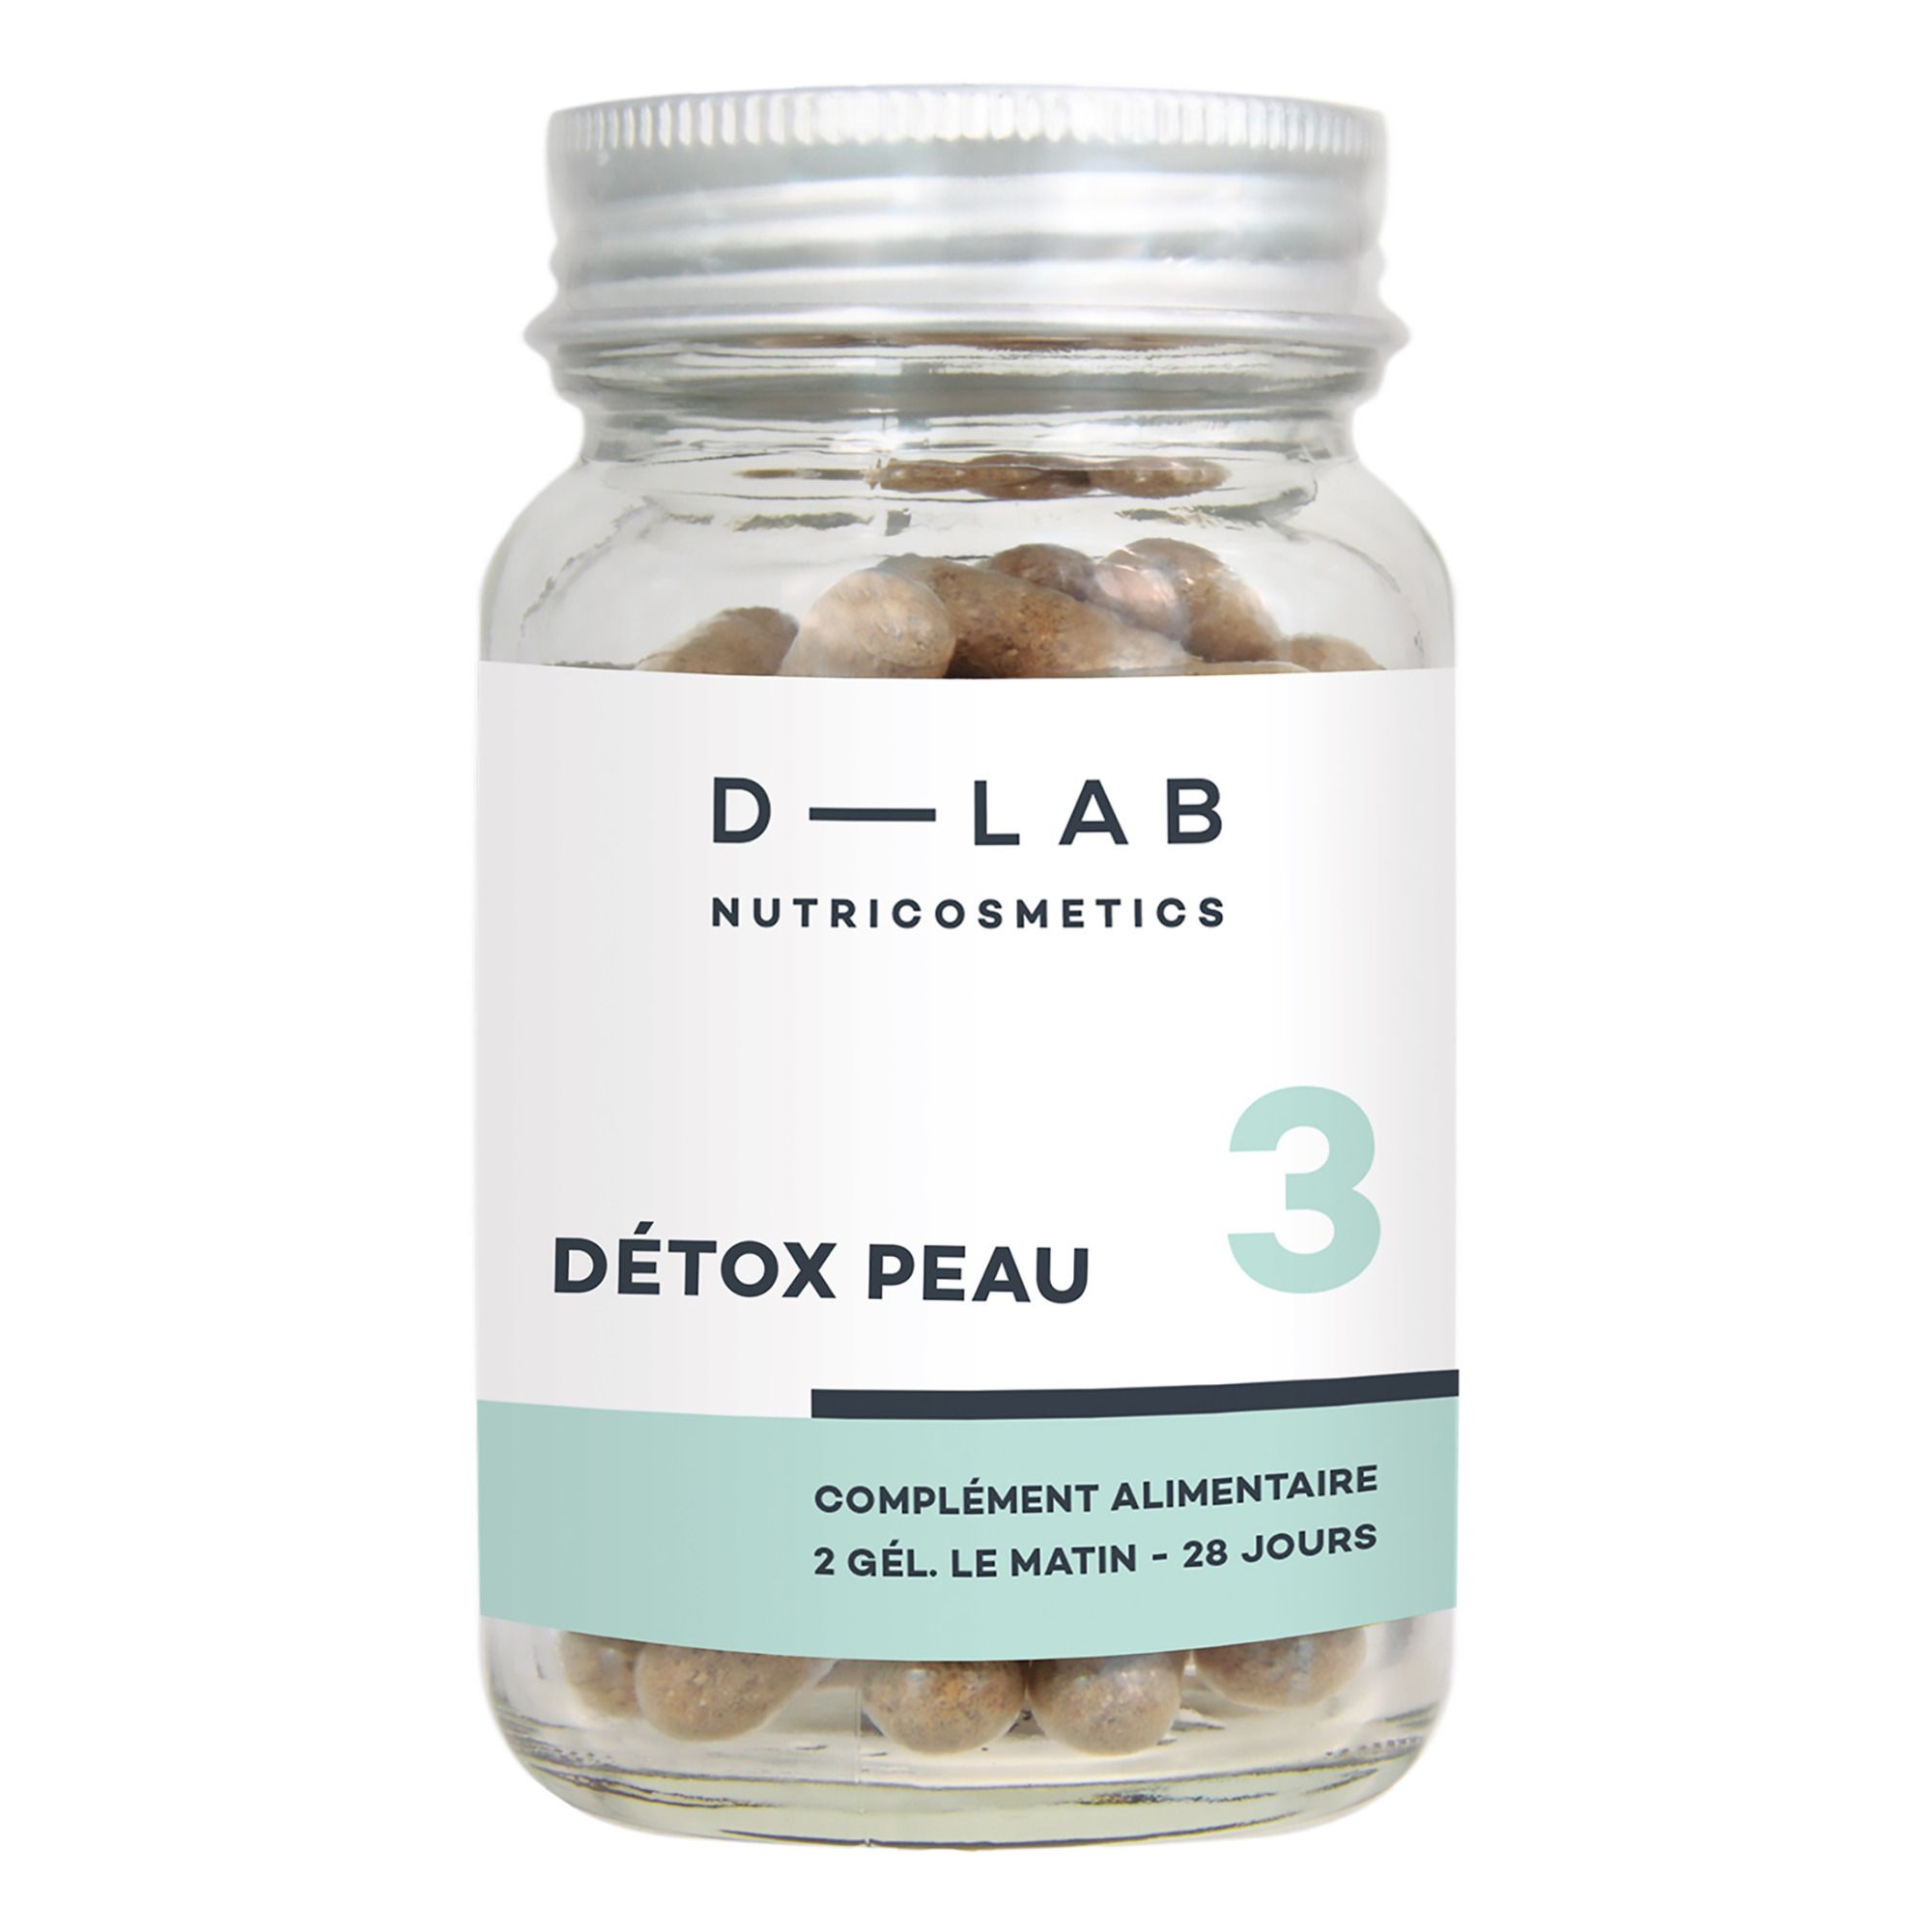 D-LAB NUTRICOSMETICS - Détox Peau Complément alimentaire - 1 mois